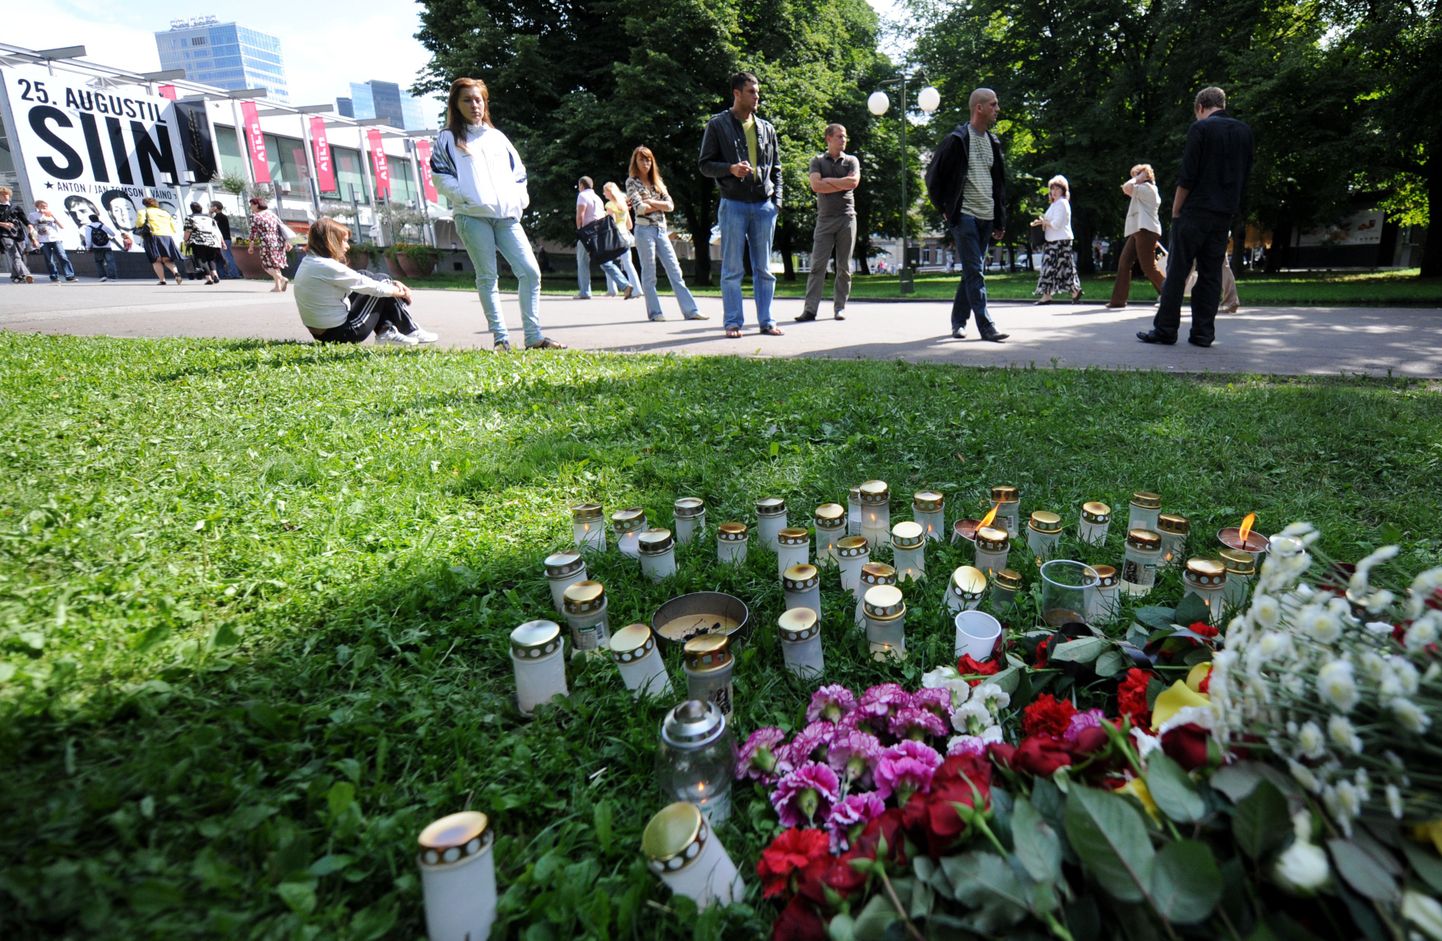 Augusti algul tapeti Tammsaare pargis tülitsedest noor mees.